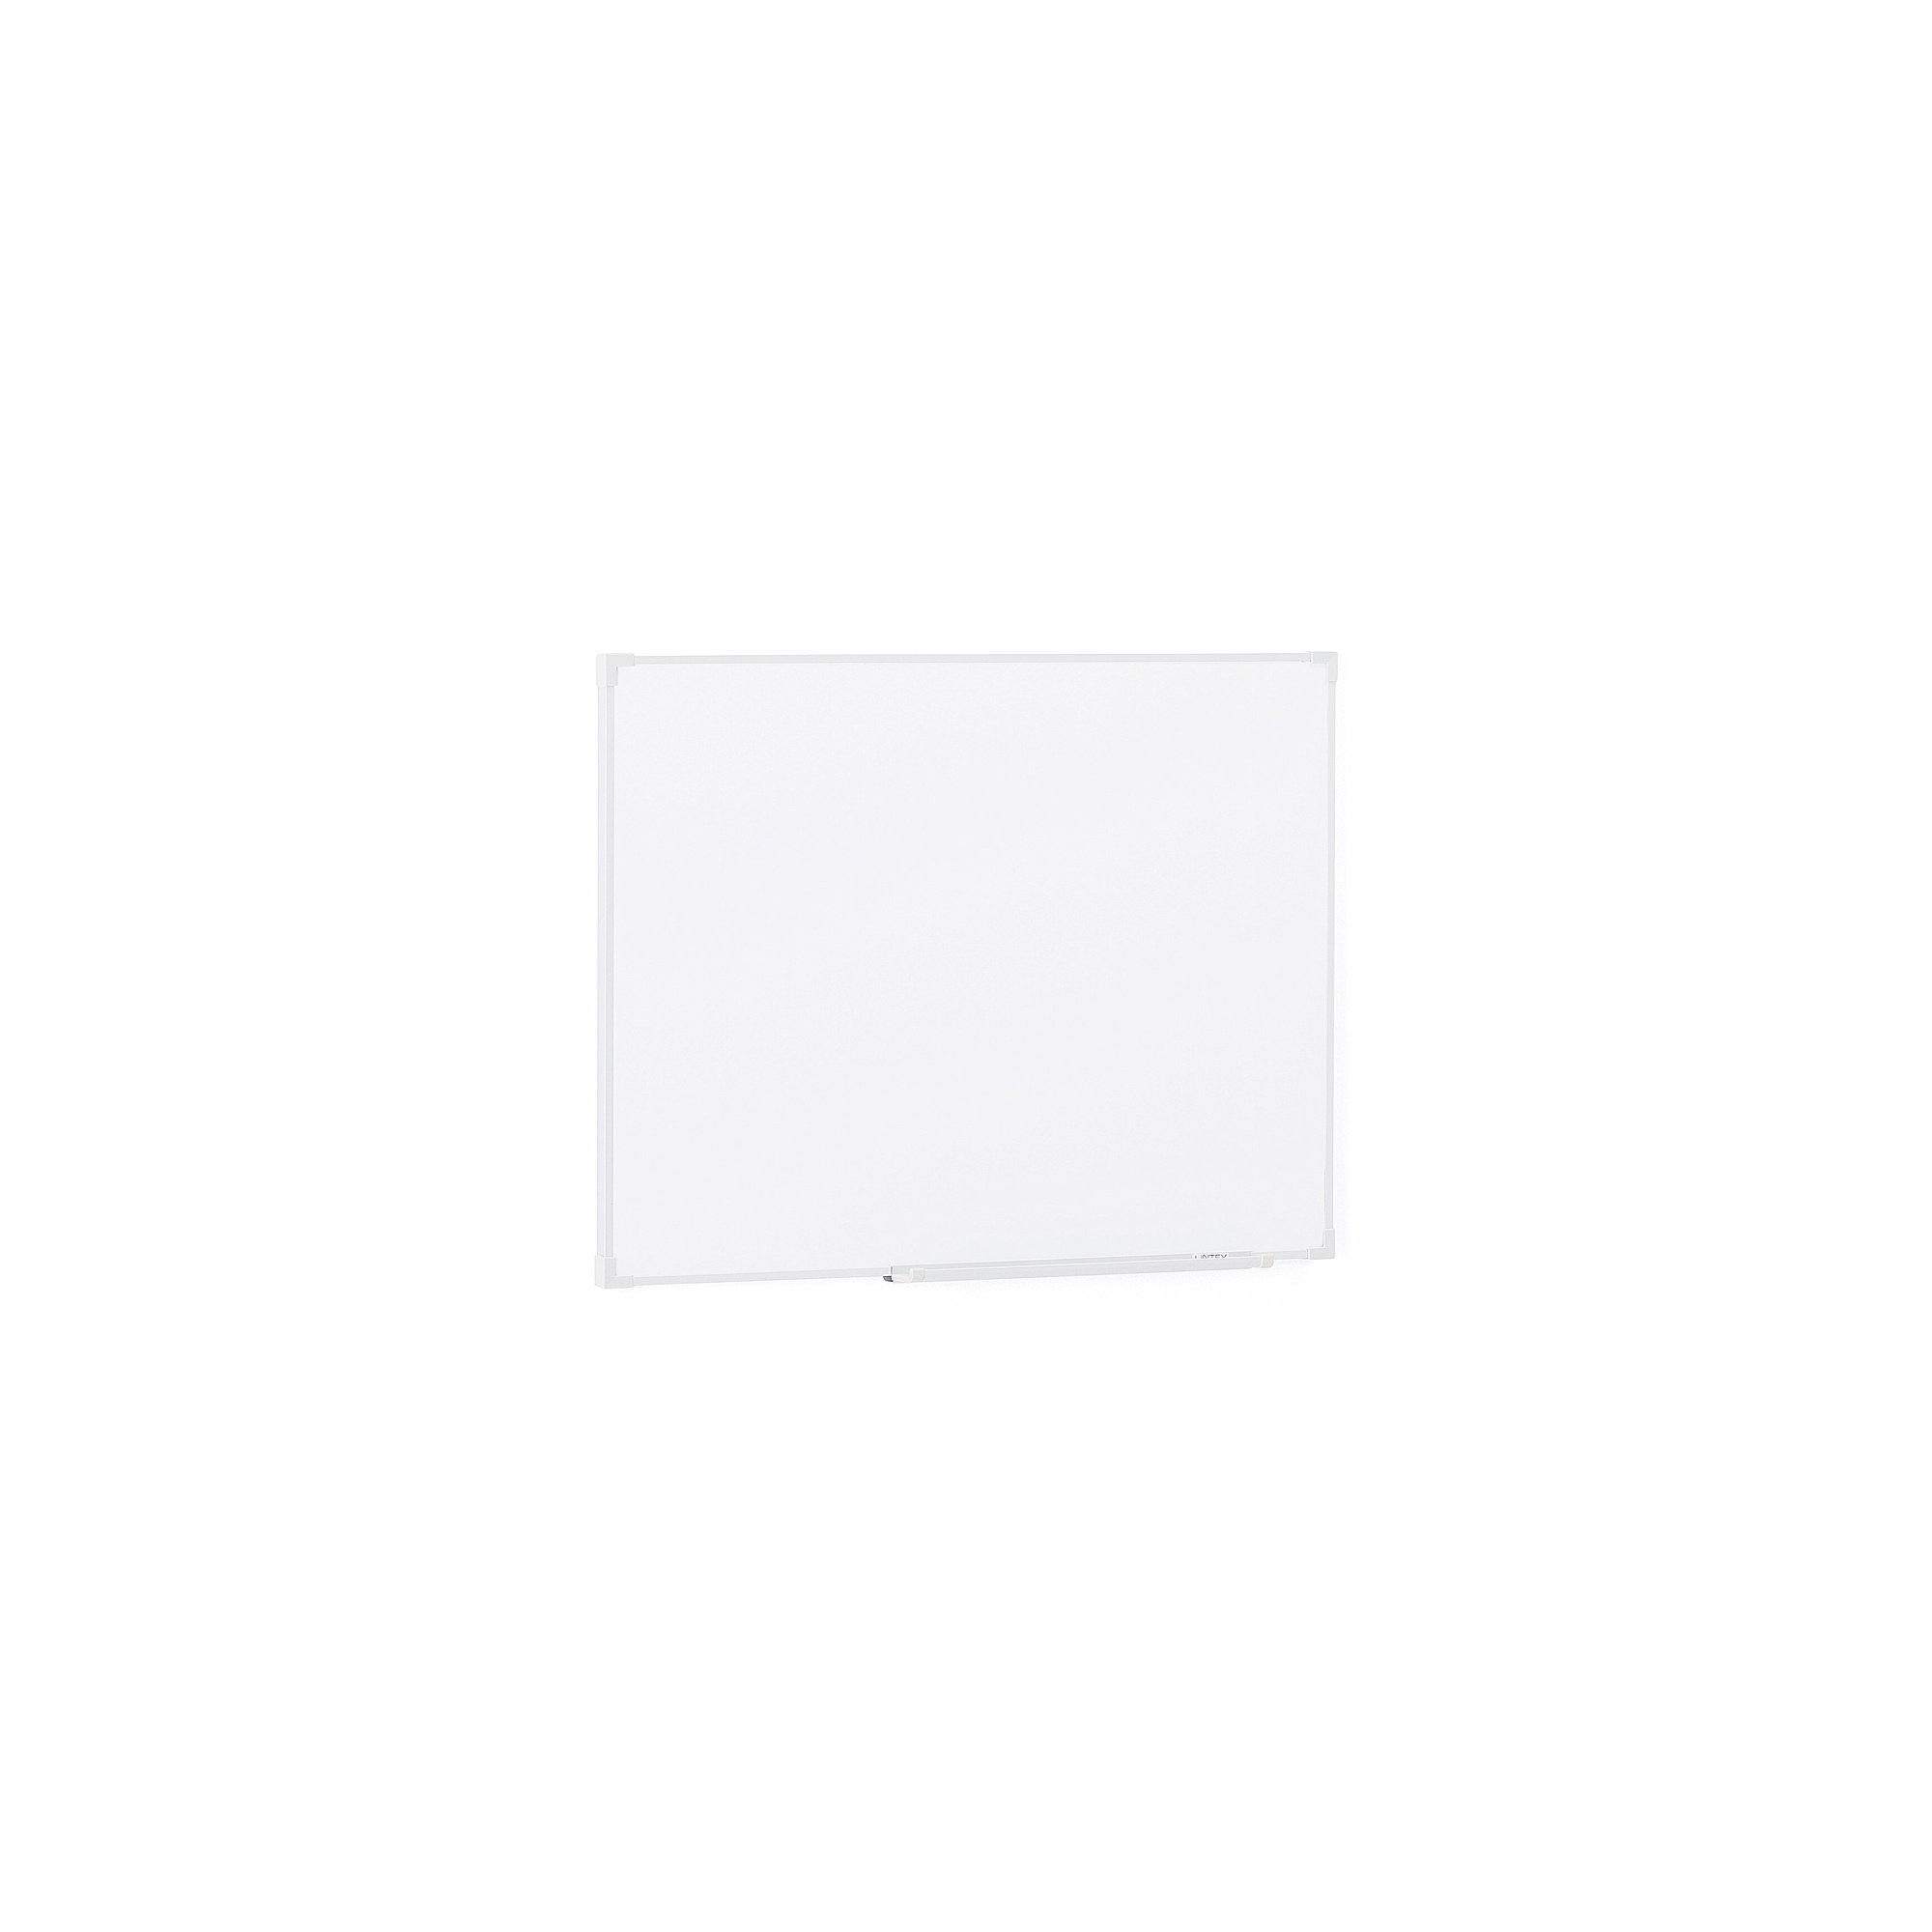 Bílá magnetická tabule DORIS, 450x600 mm